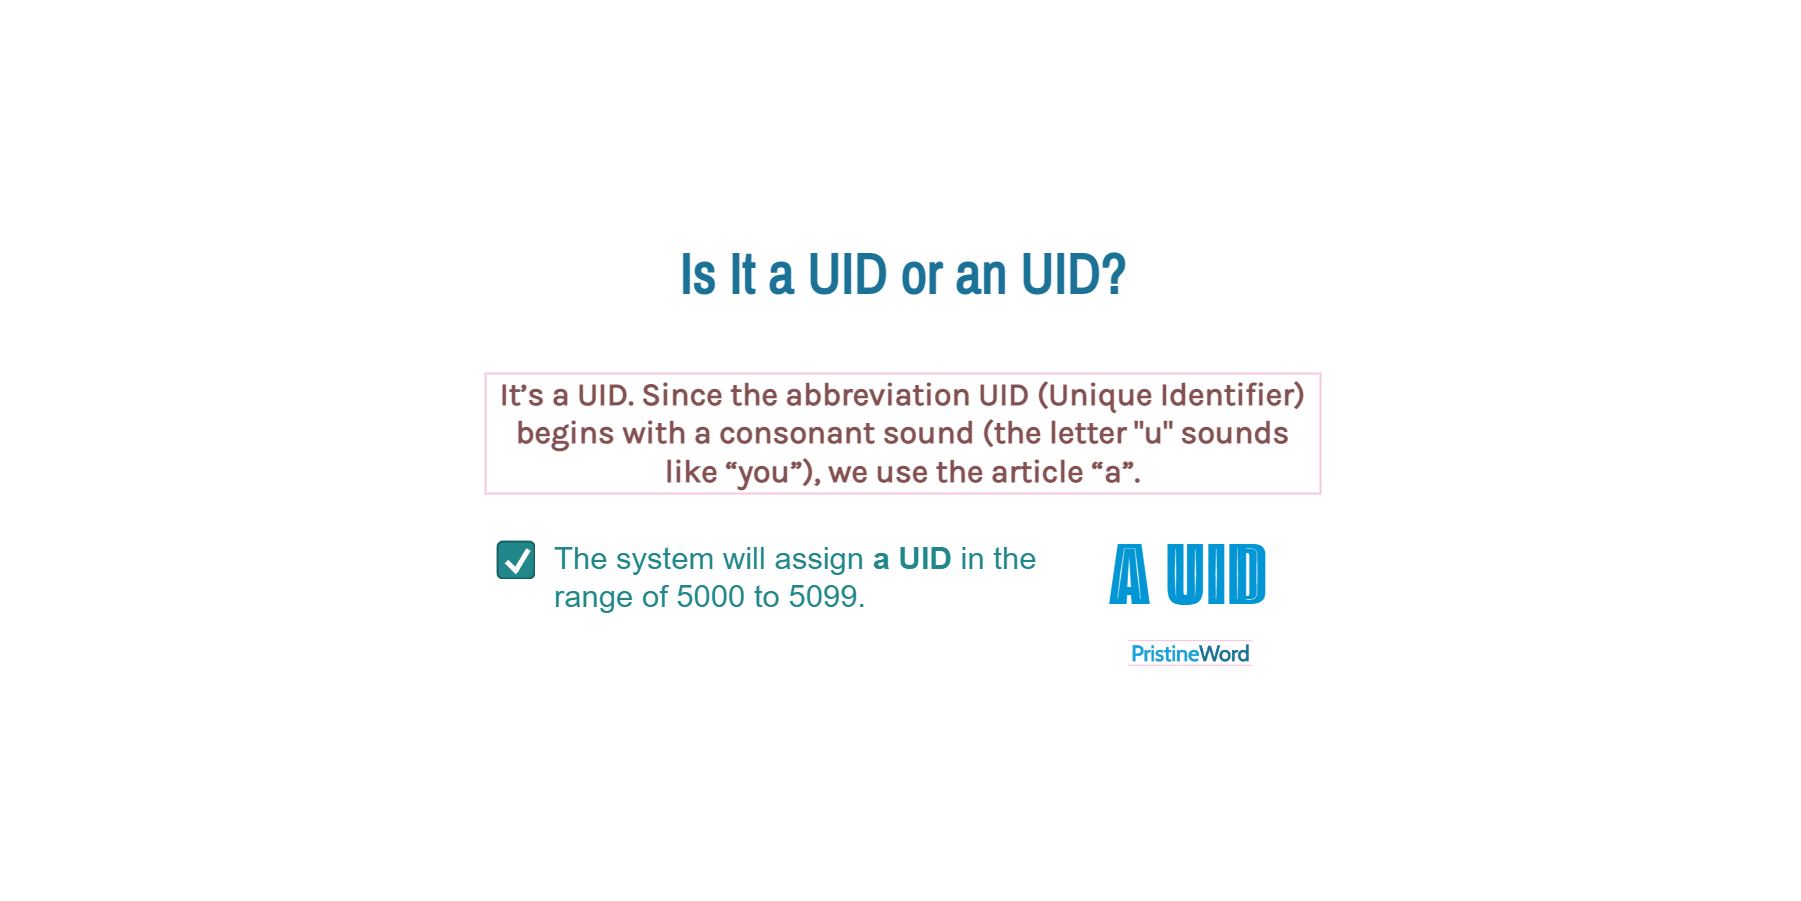 Is It a UID or an UID?